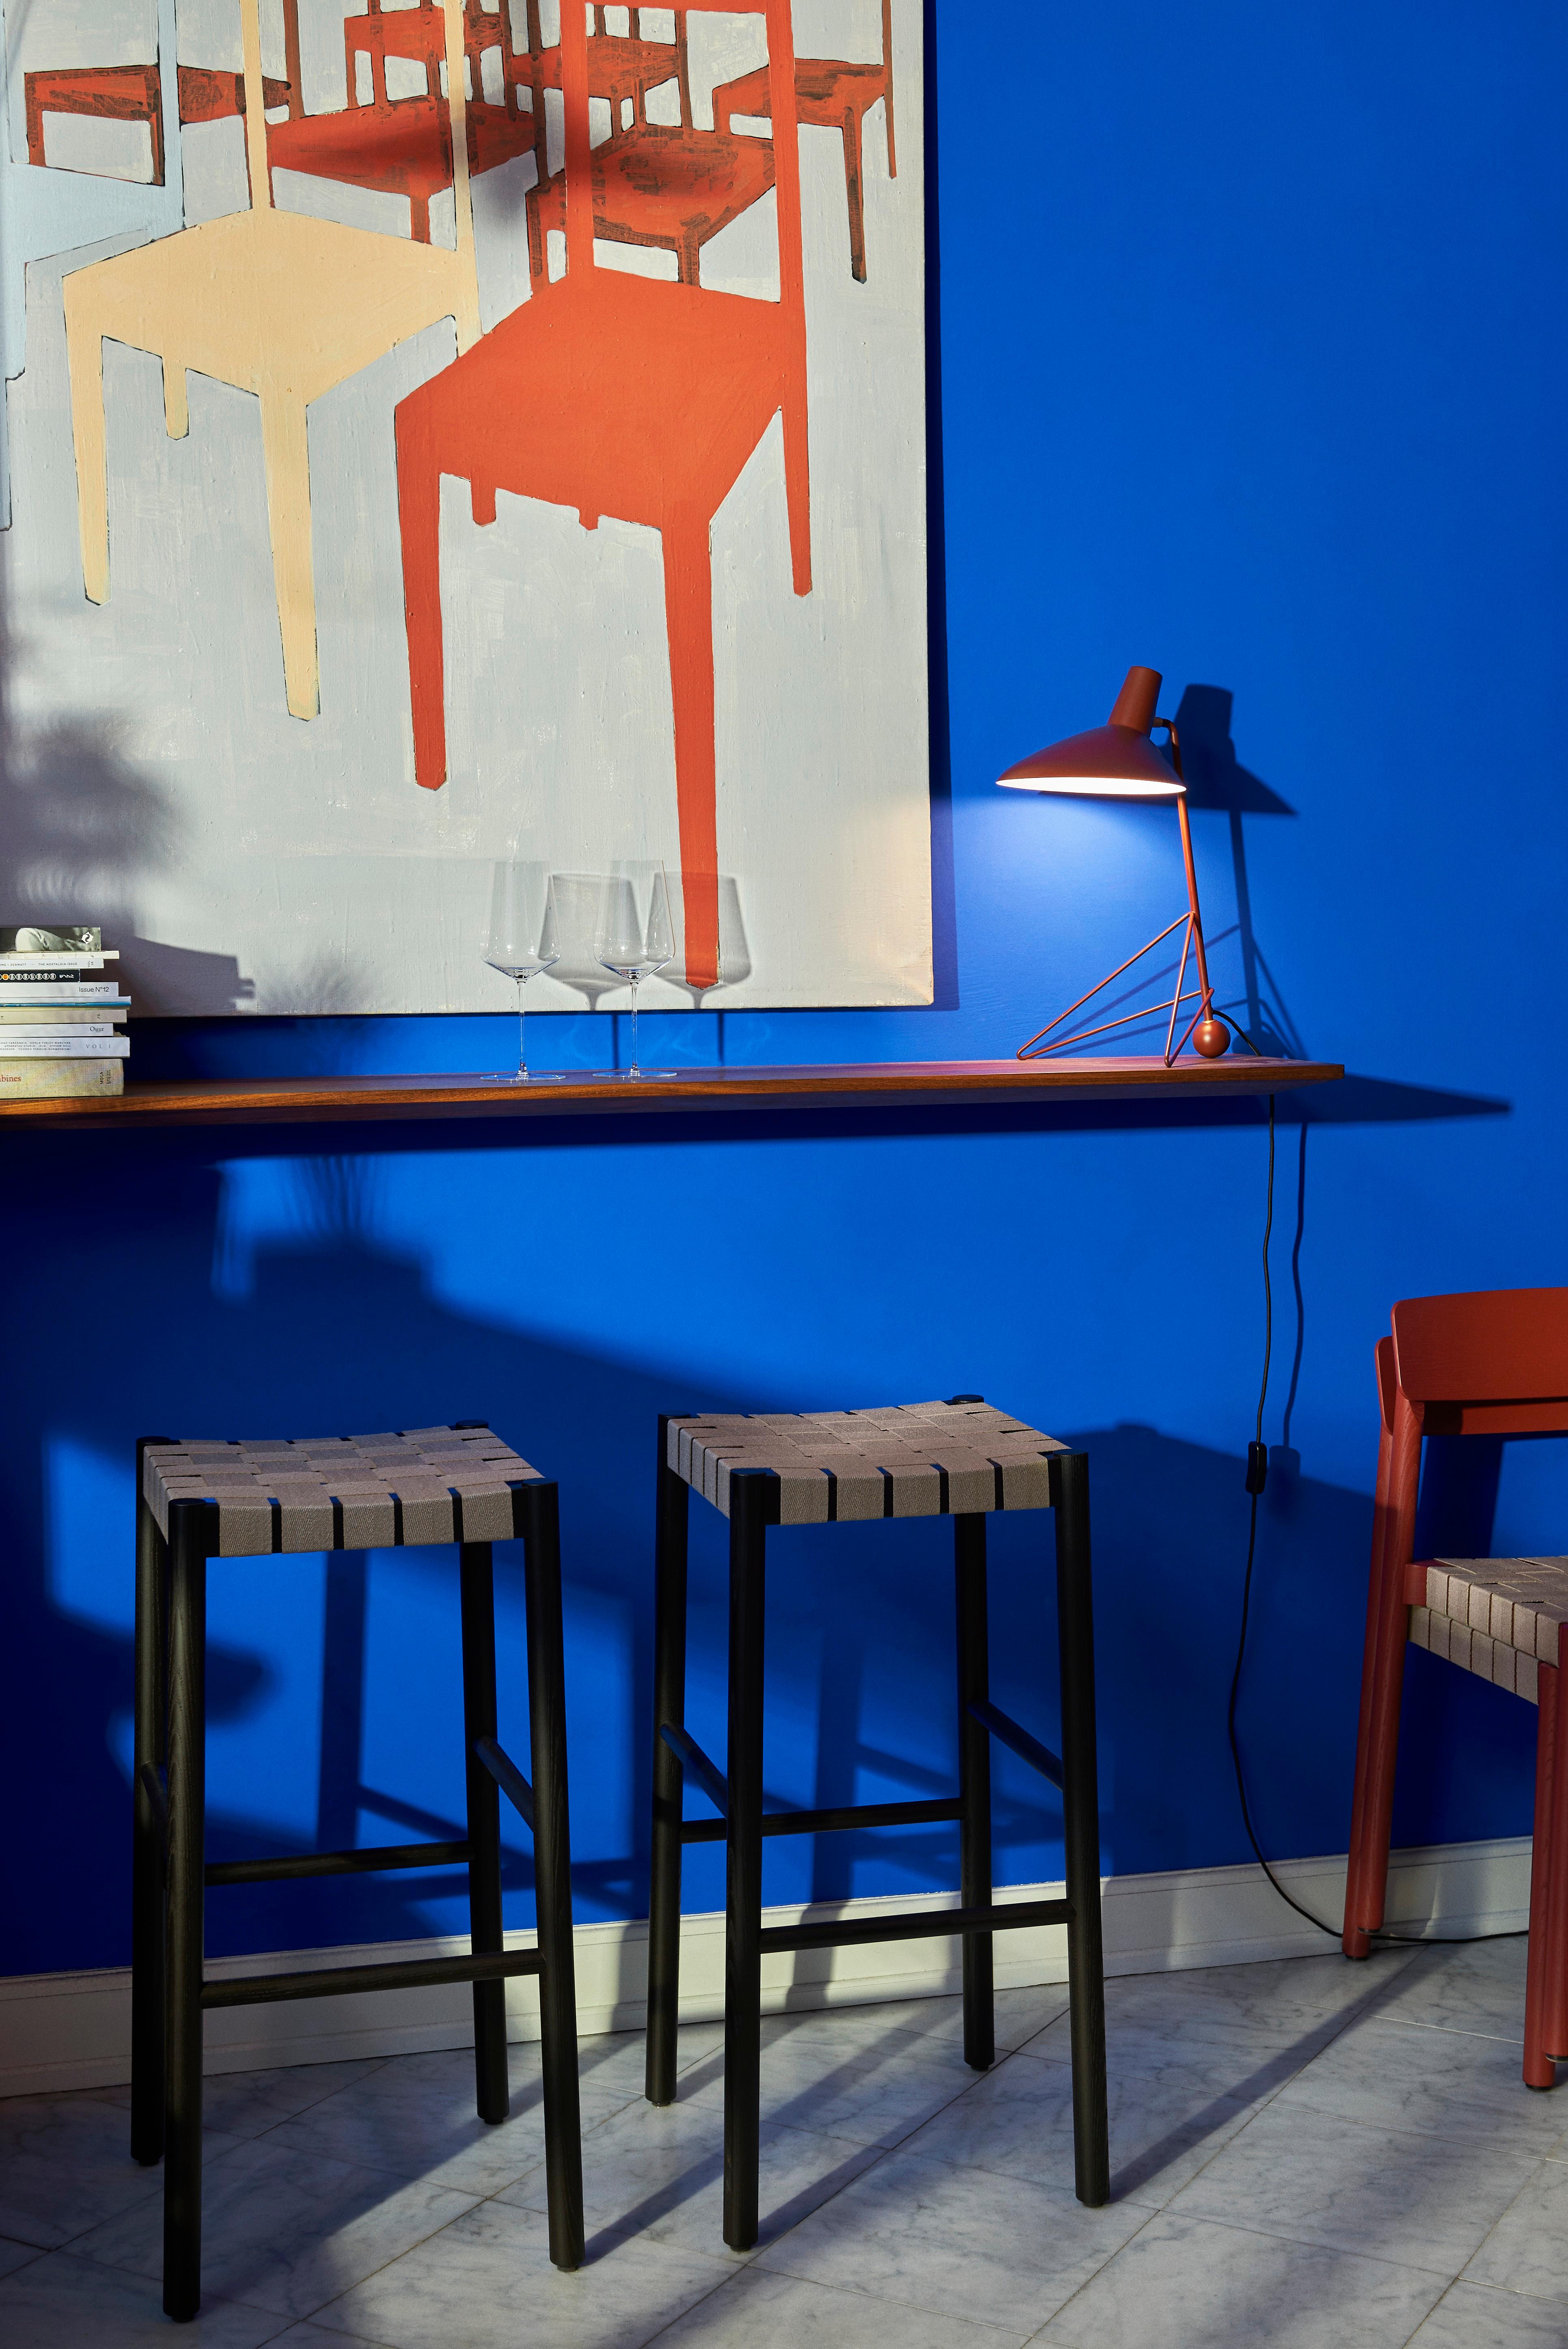 Après le succès de son lampadaire, &Tradition a élargi la série Tripod en y ajoutant une lampe de table au même design intemporel. 
Tripod, une lampe de table construite en acier revêtu de poudre avec des détails en laiton, reflète le minimalisme